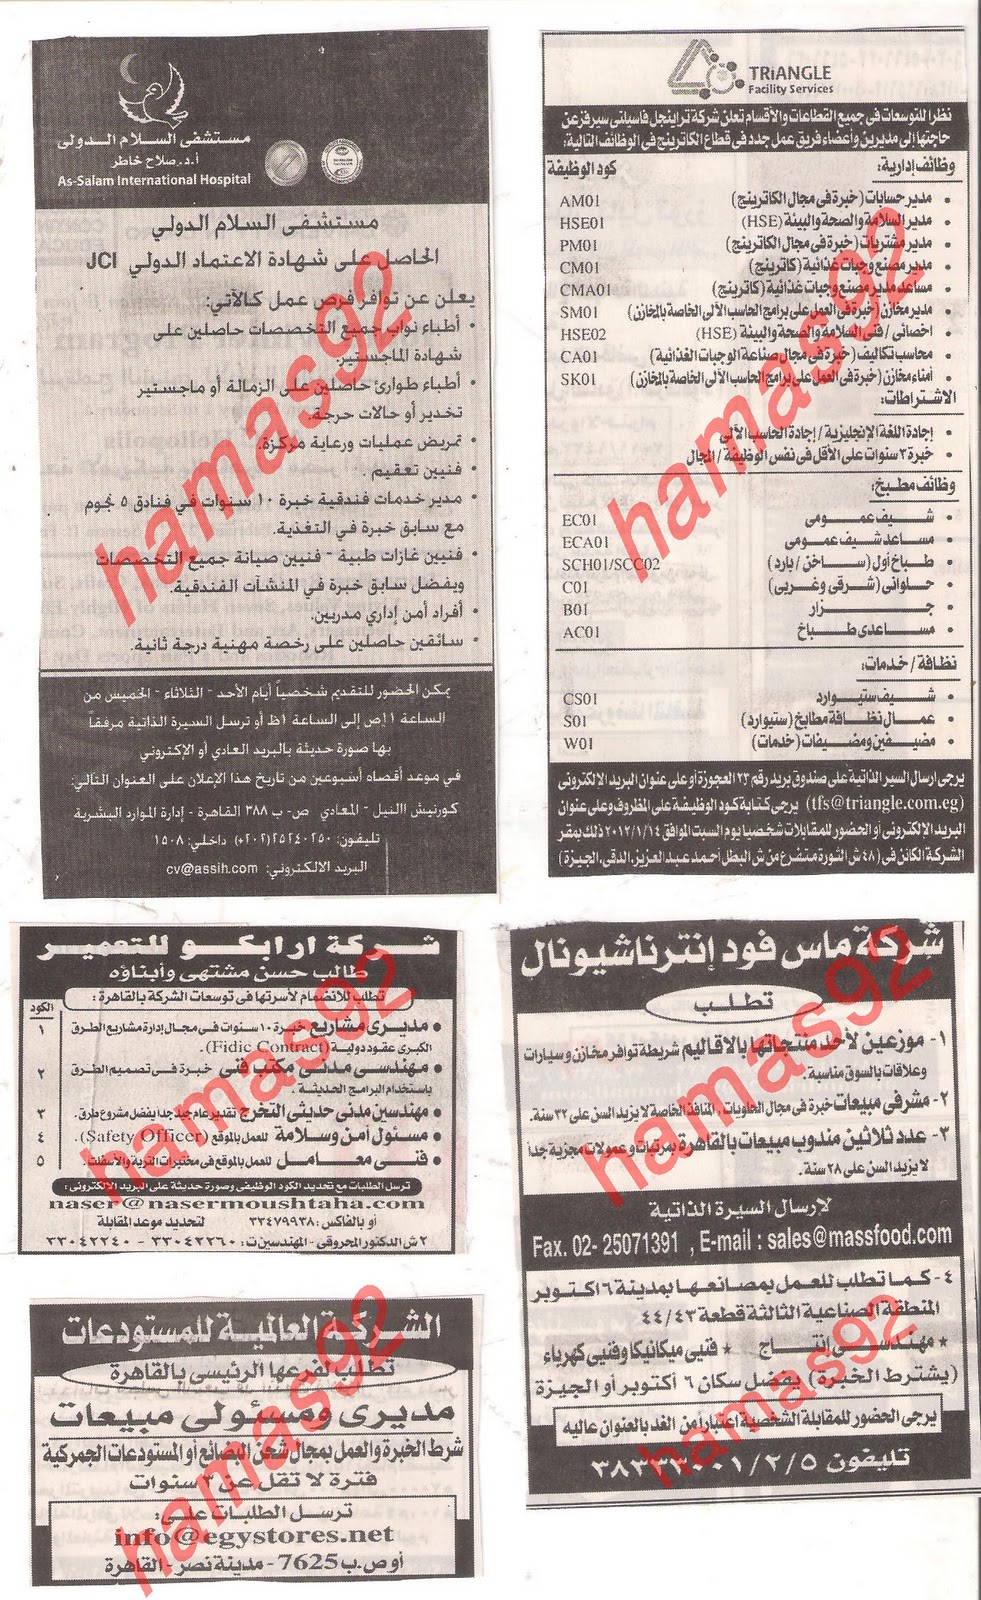 مصرى , وظائف خالية من جريدة الاهرام الجمعة 6\1\2012 , الجزء الثالث  Picture+015